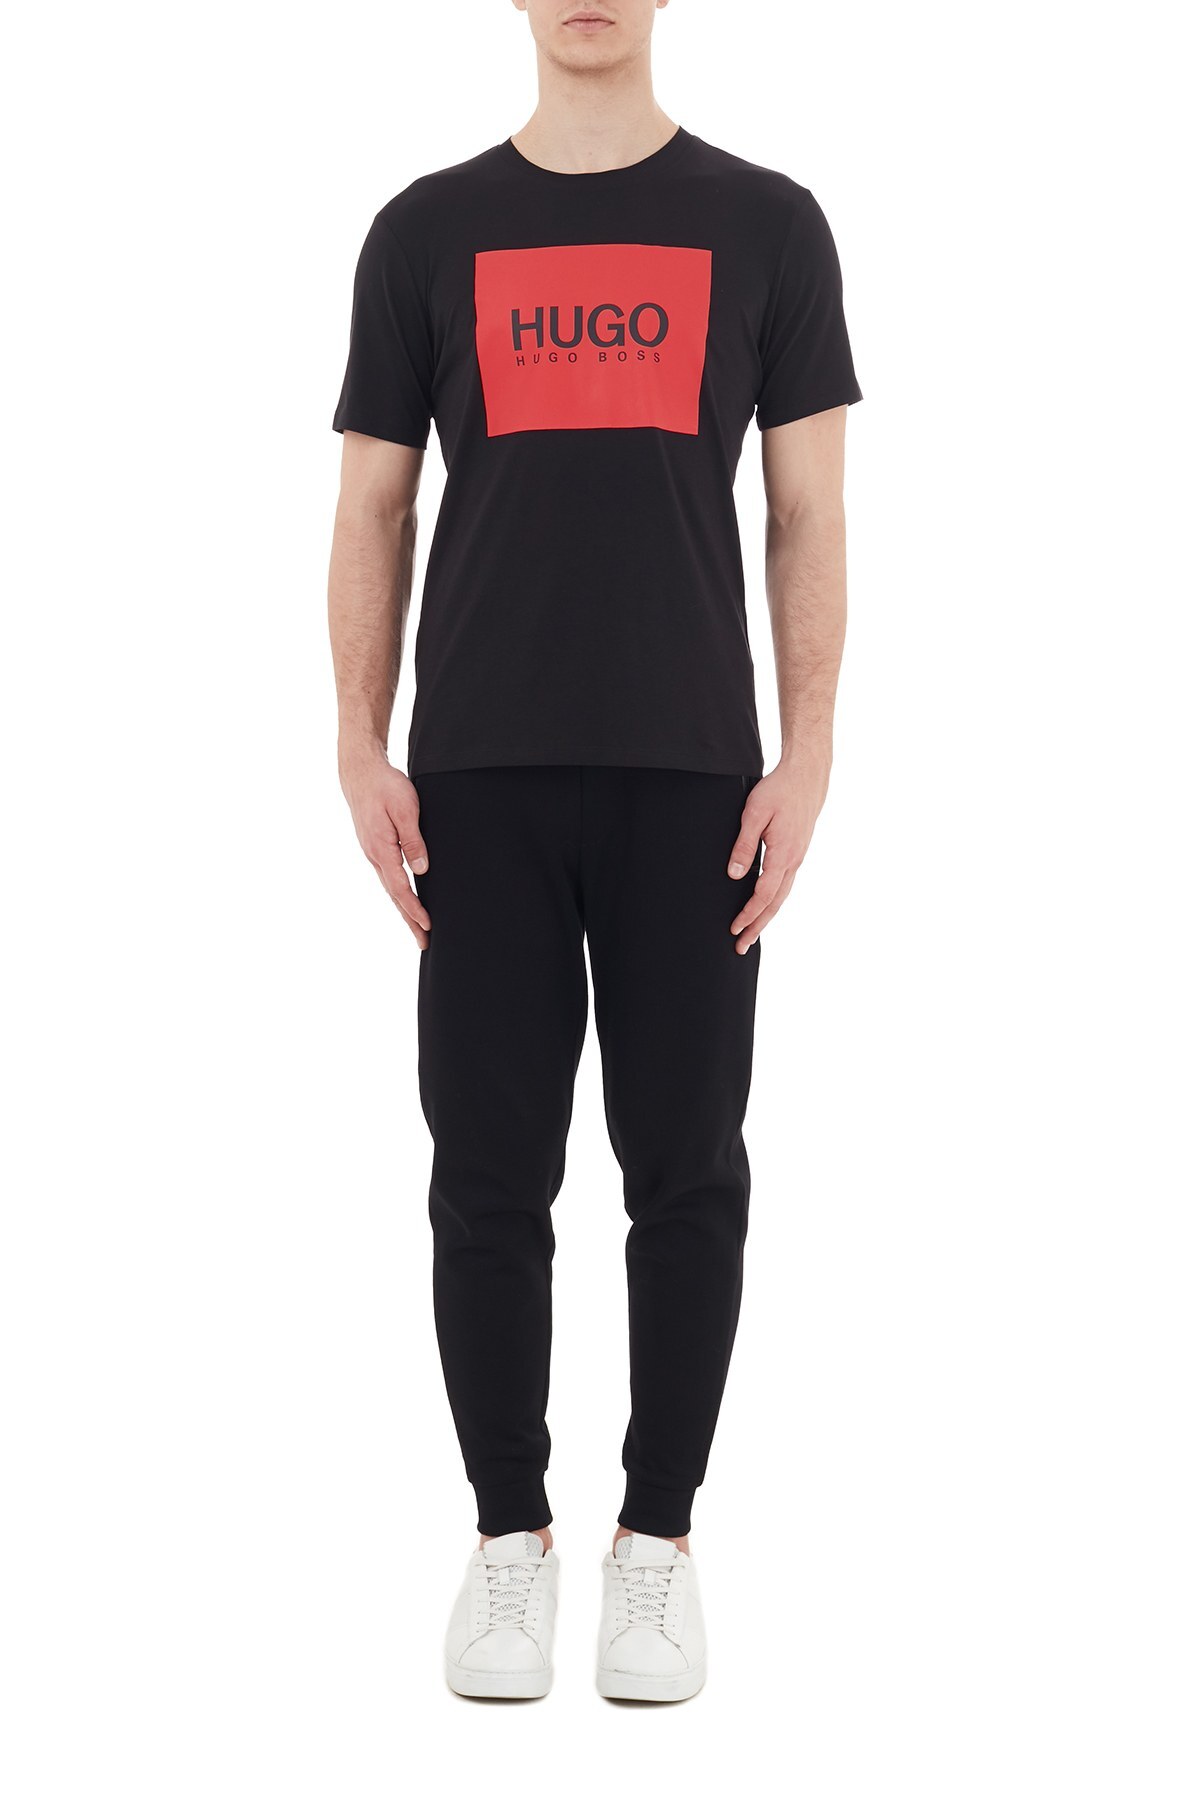 Hugo Boss Logo Baskılı Bisiklet Yaka % 100 Pamuk Erkek T Shirt 50437291 001 SİYAH